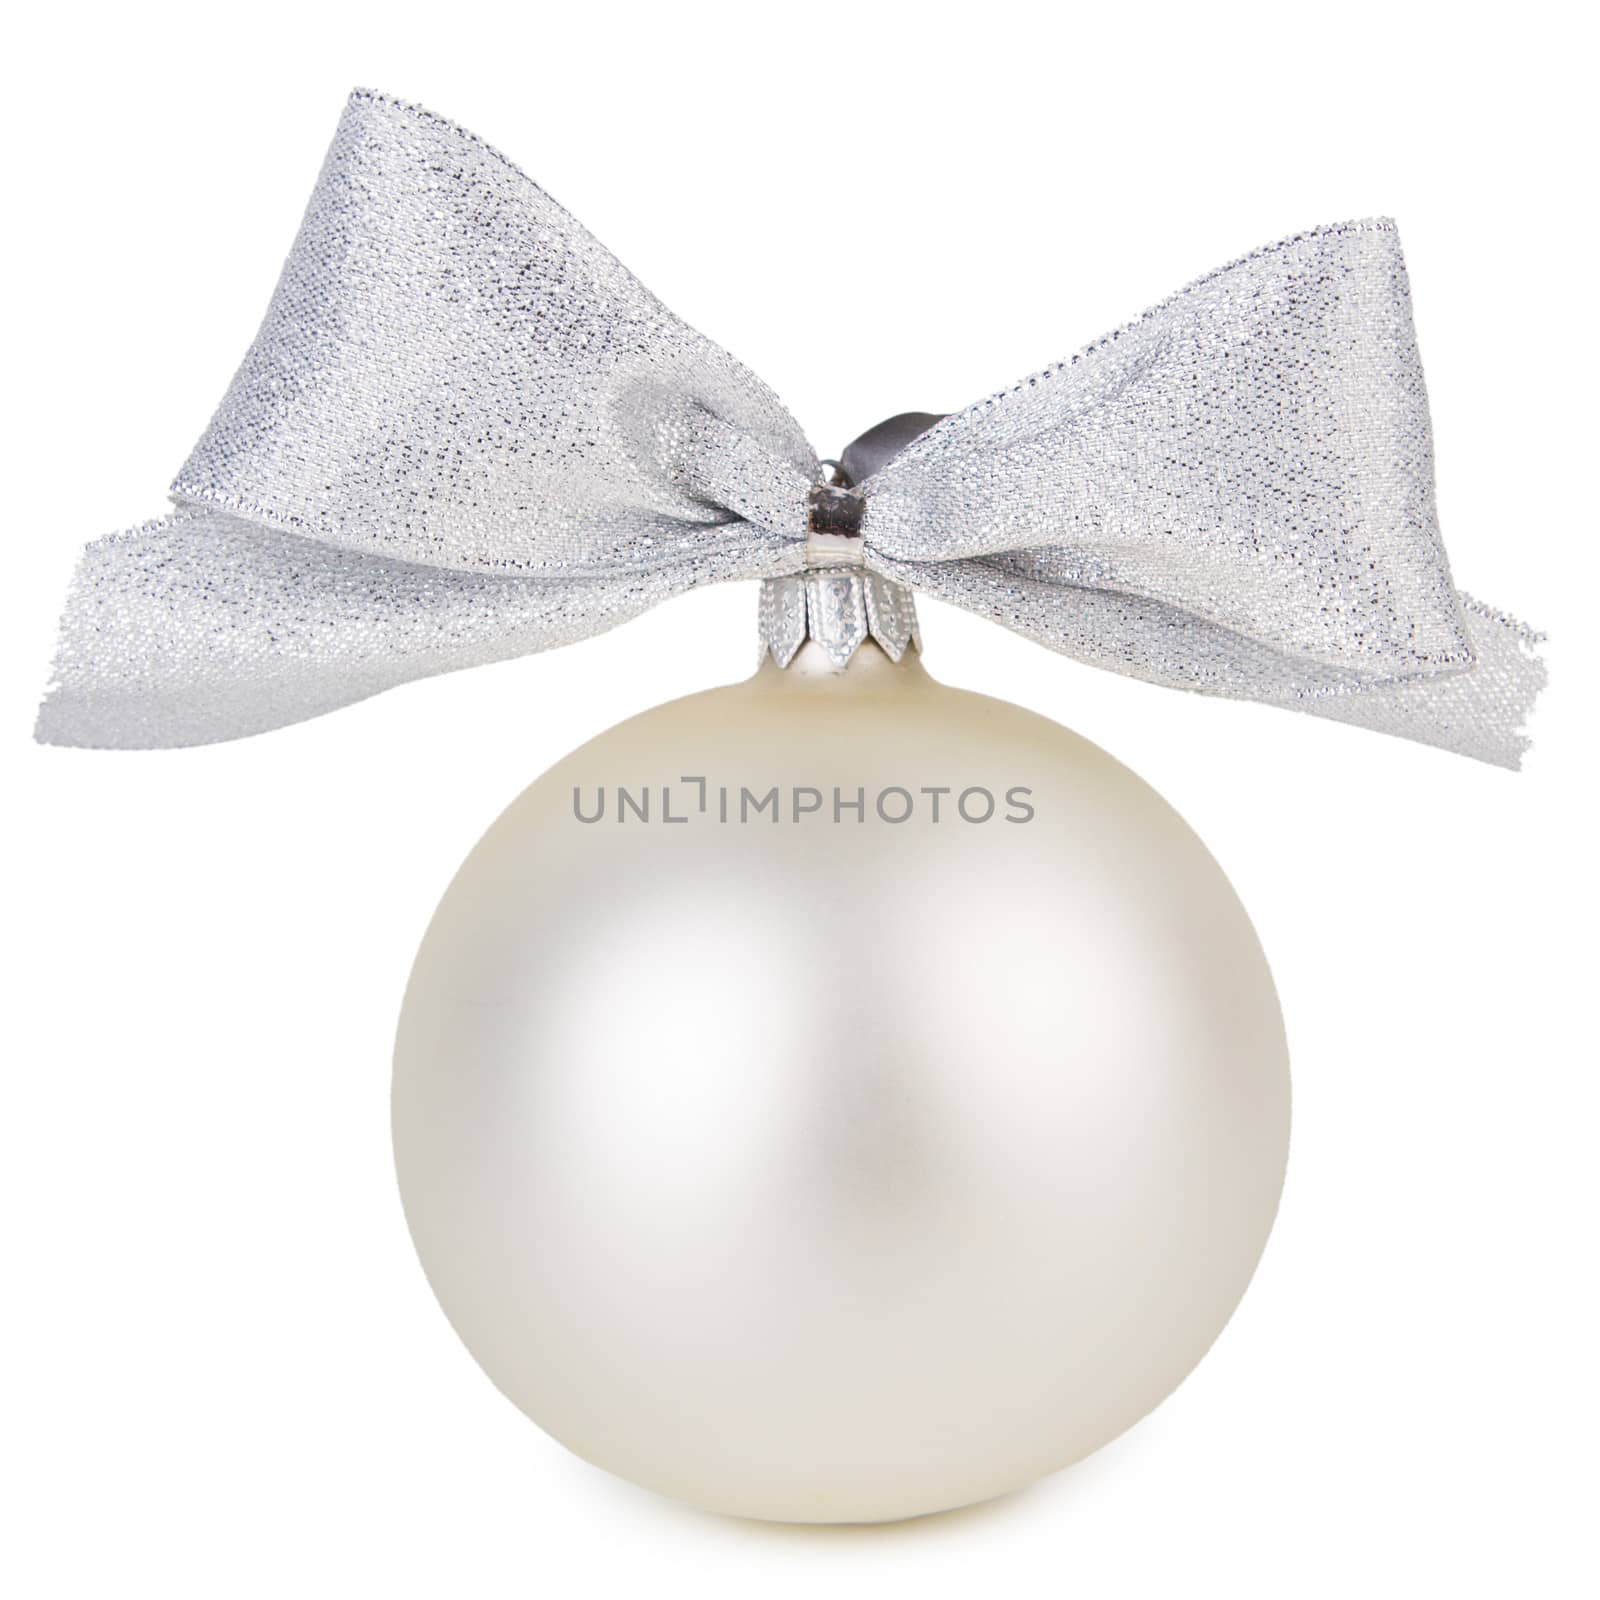 White Christmas ball by grigorenko